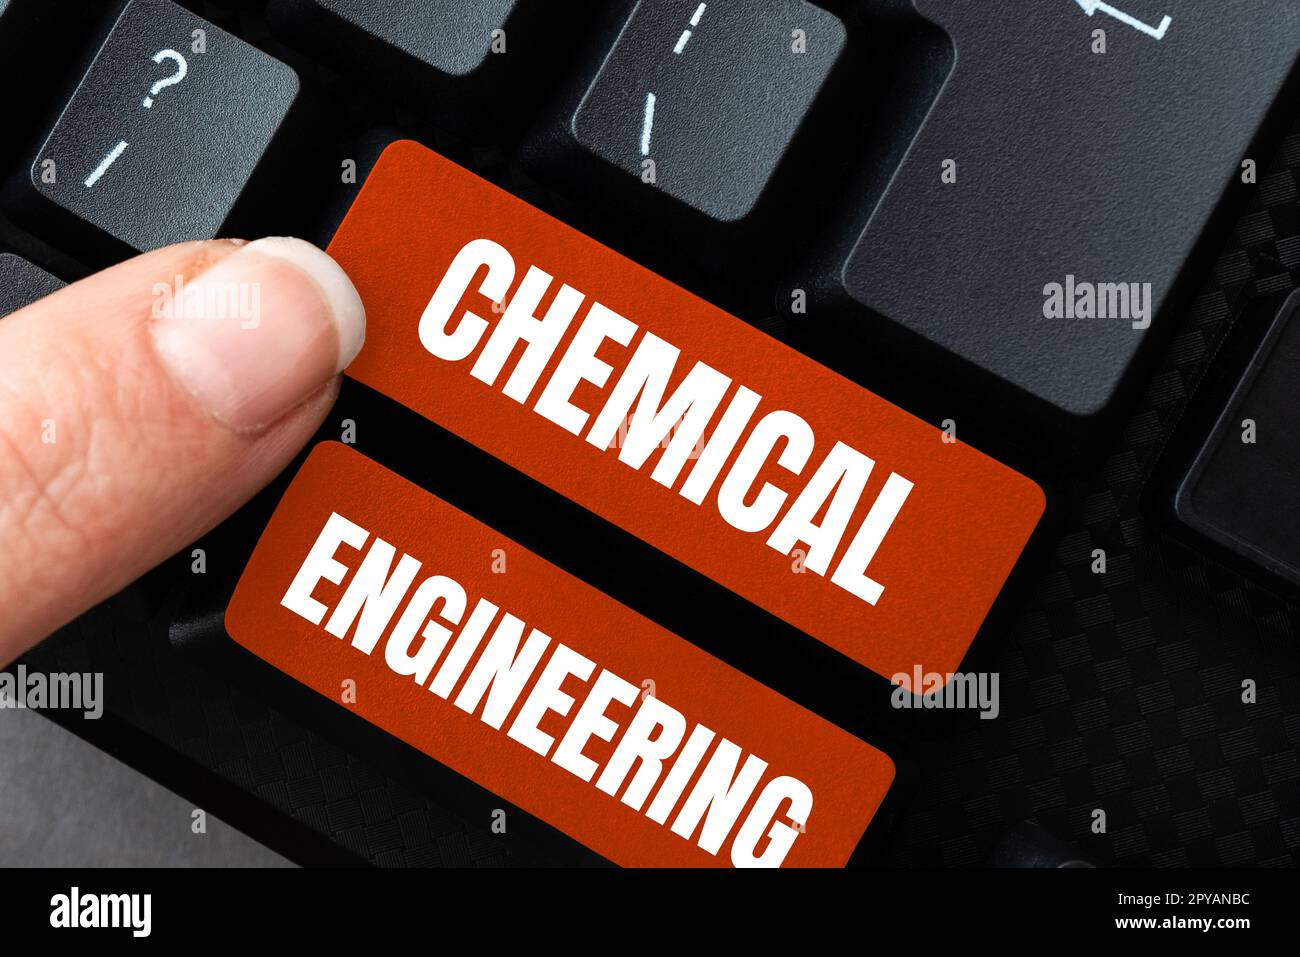 Schreiben mit Textanzeige Chemical Engineering. Geschäftsidee, die Dinge entwickelt, die sich mit der industriellen Anwendung der Chemie befassen Stockfoto